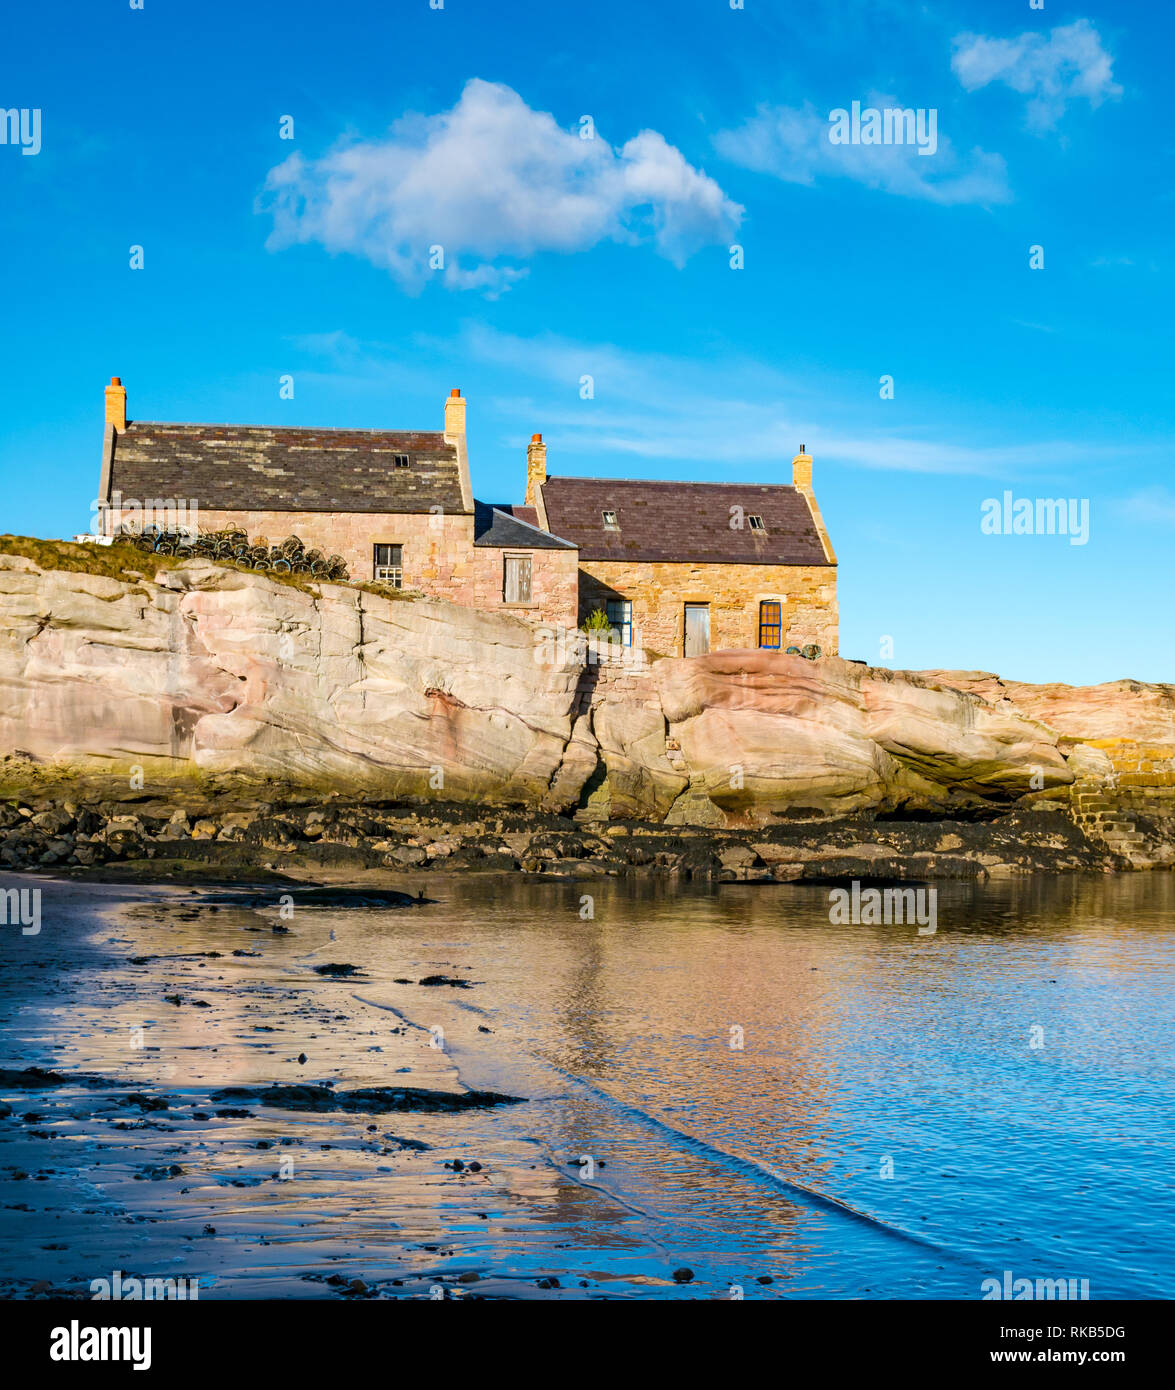 Vieux chalets, Cove Harbour, Berwickshire, Scottish Borders, Scotland, UK Banque D'Images